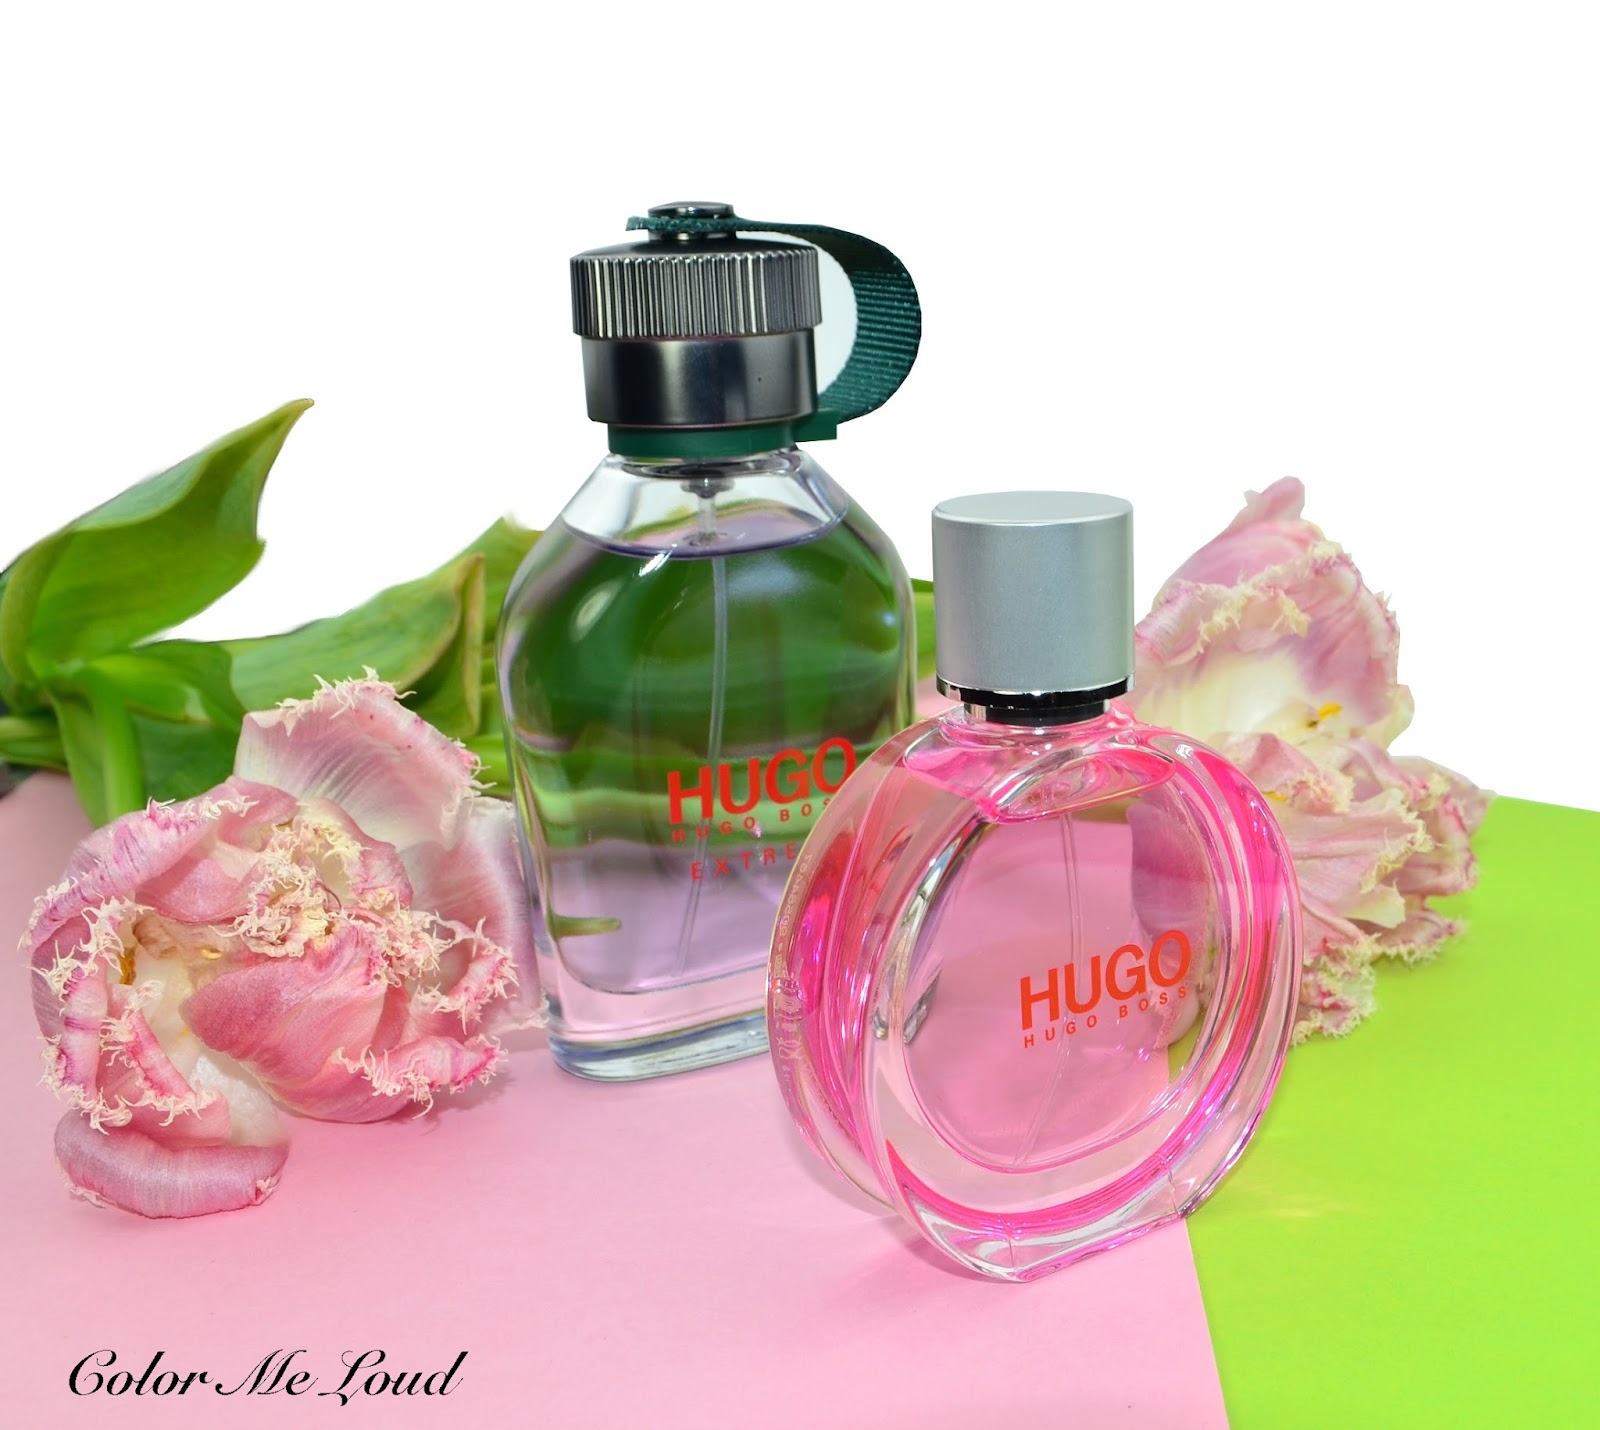 Hugo Boss Woman Extreme, Man Extreme Eau de Parfum, Review